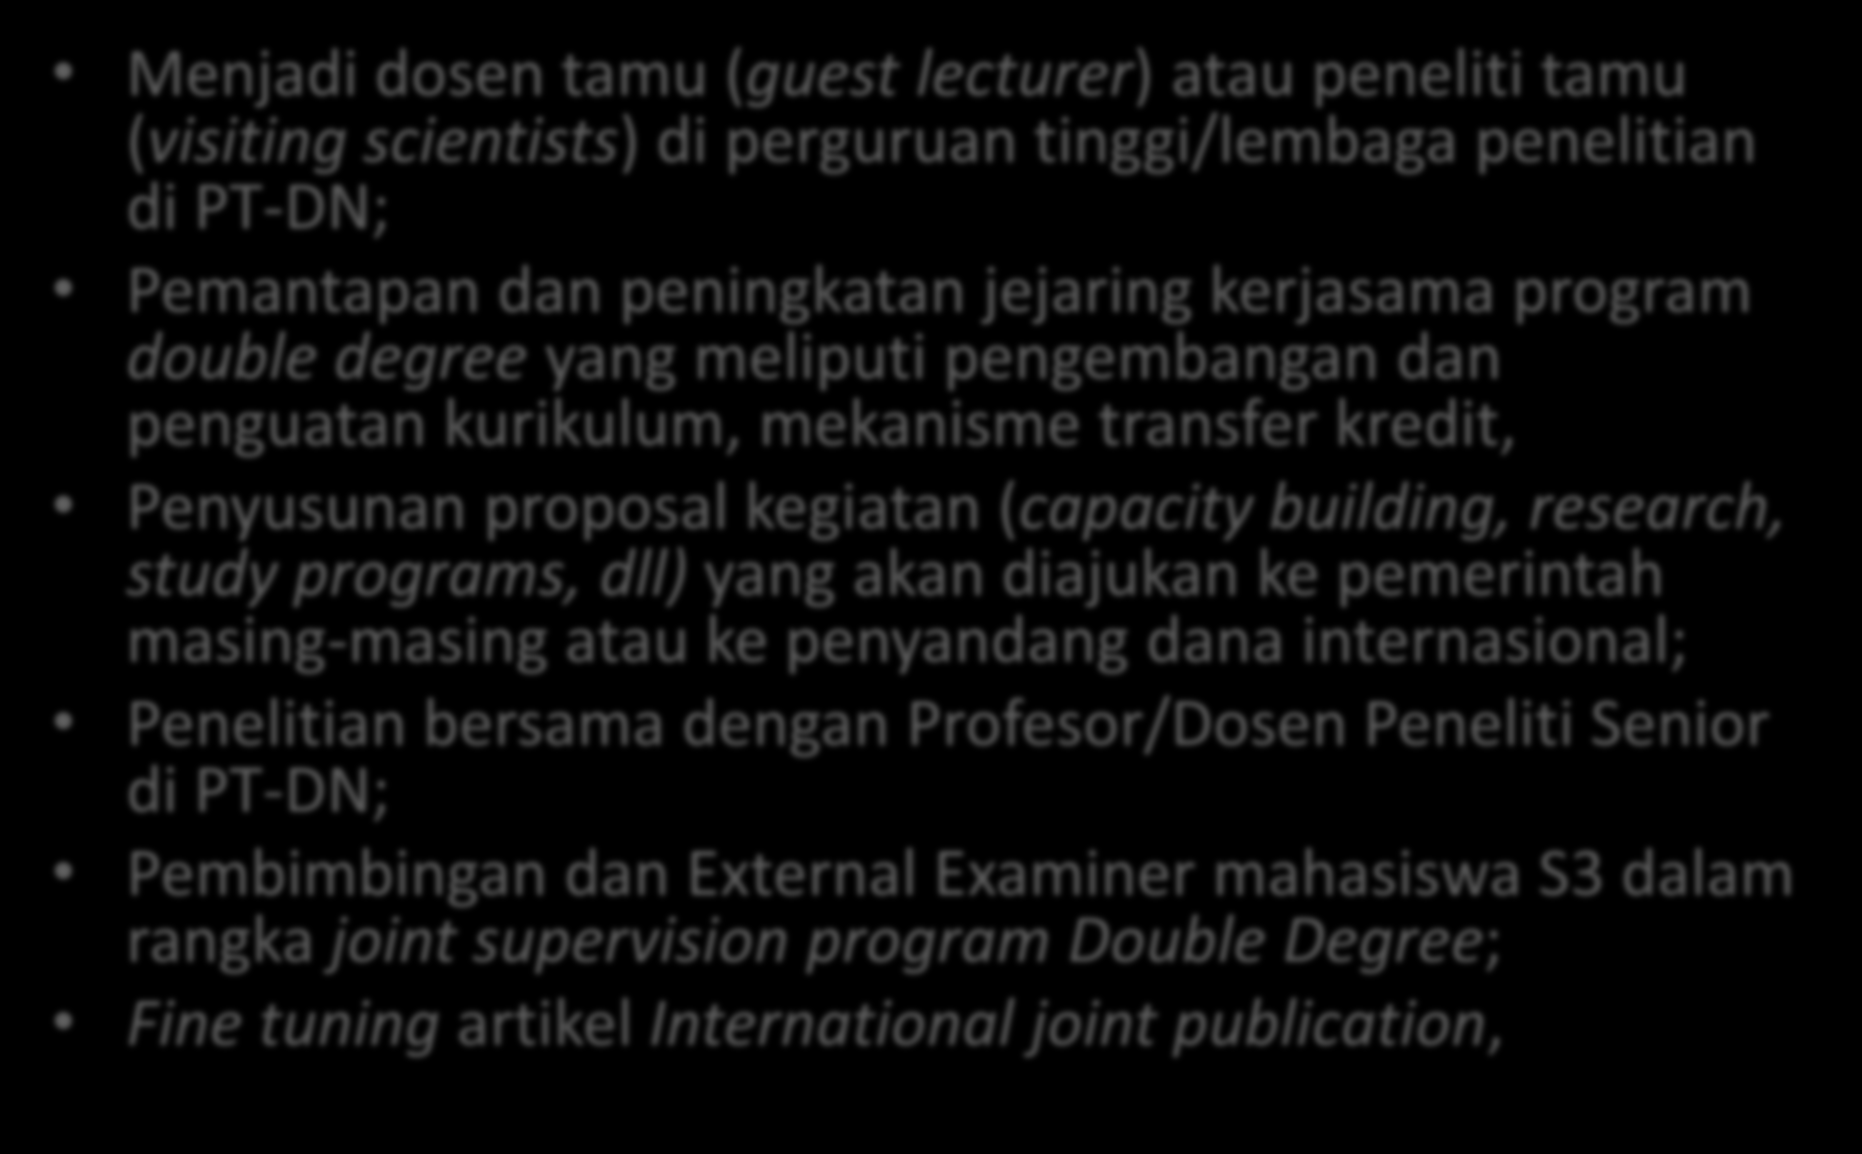 Guest Professor di Indonesia Menjadi dosen tamu (guest lecturer) atau peneliti tamu (visiting scientists) di perguruan tinggi/lembaga penelitian di PT-DN; Pemantapan dan peningkatan jejaring